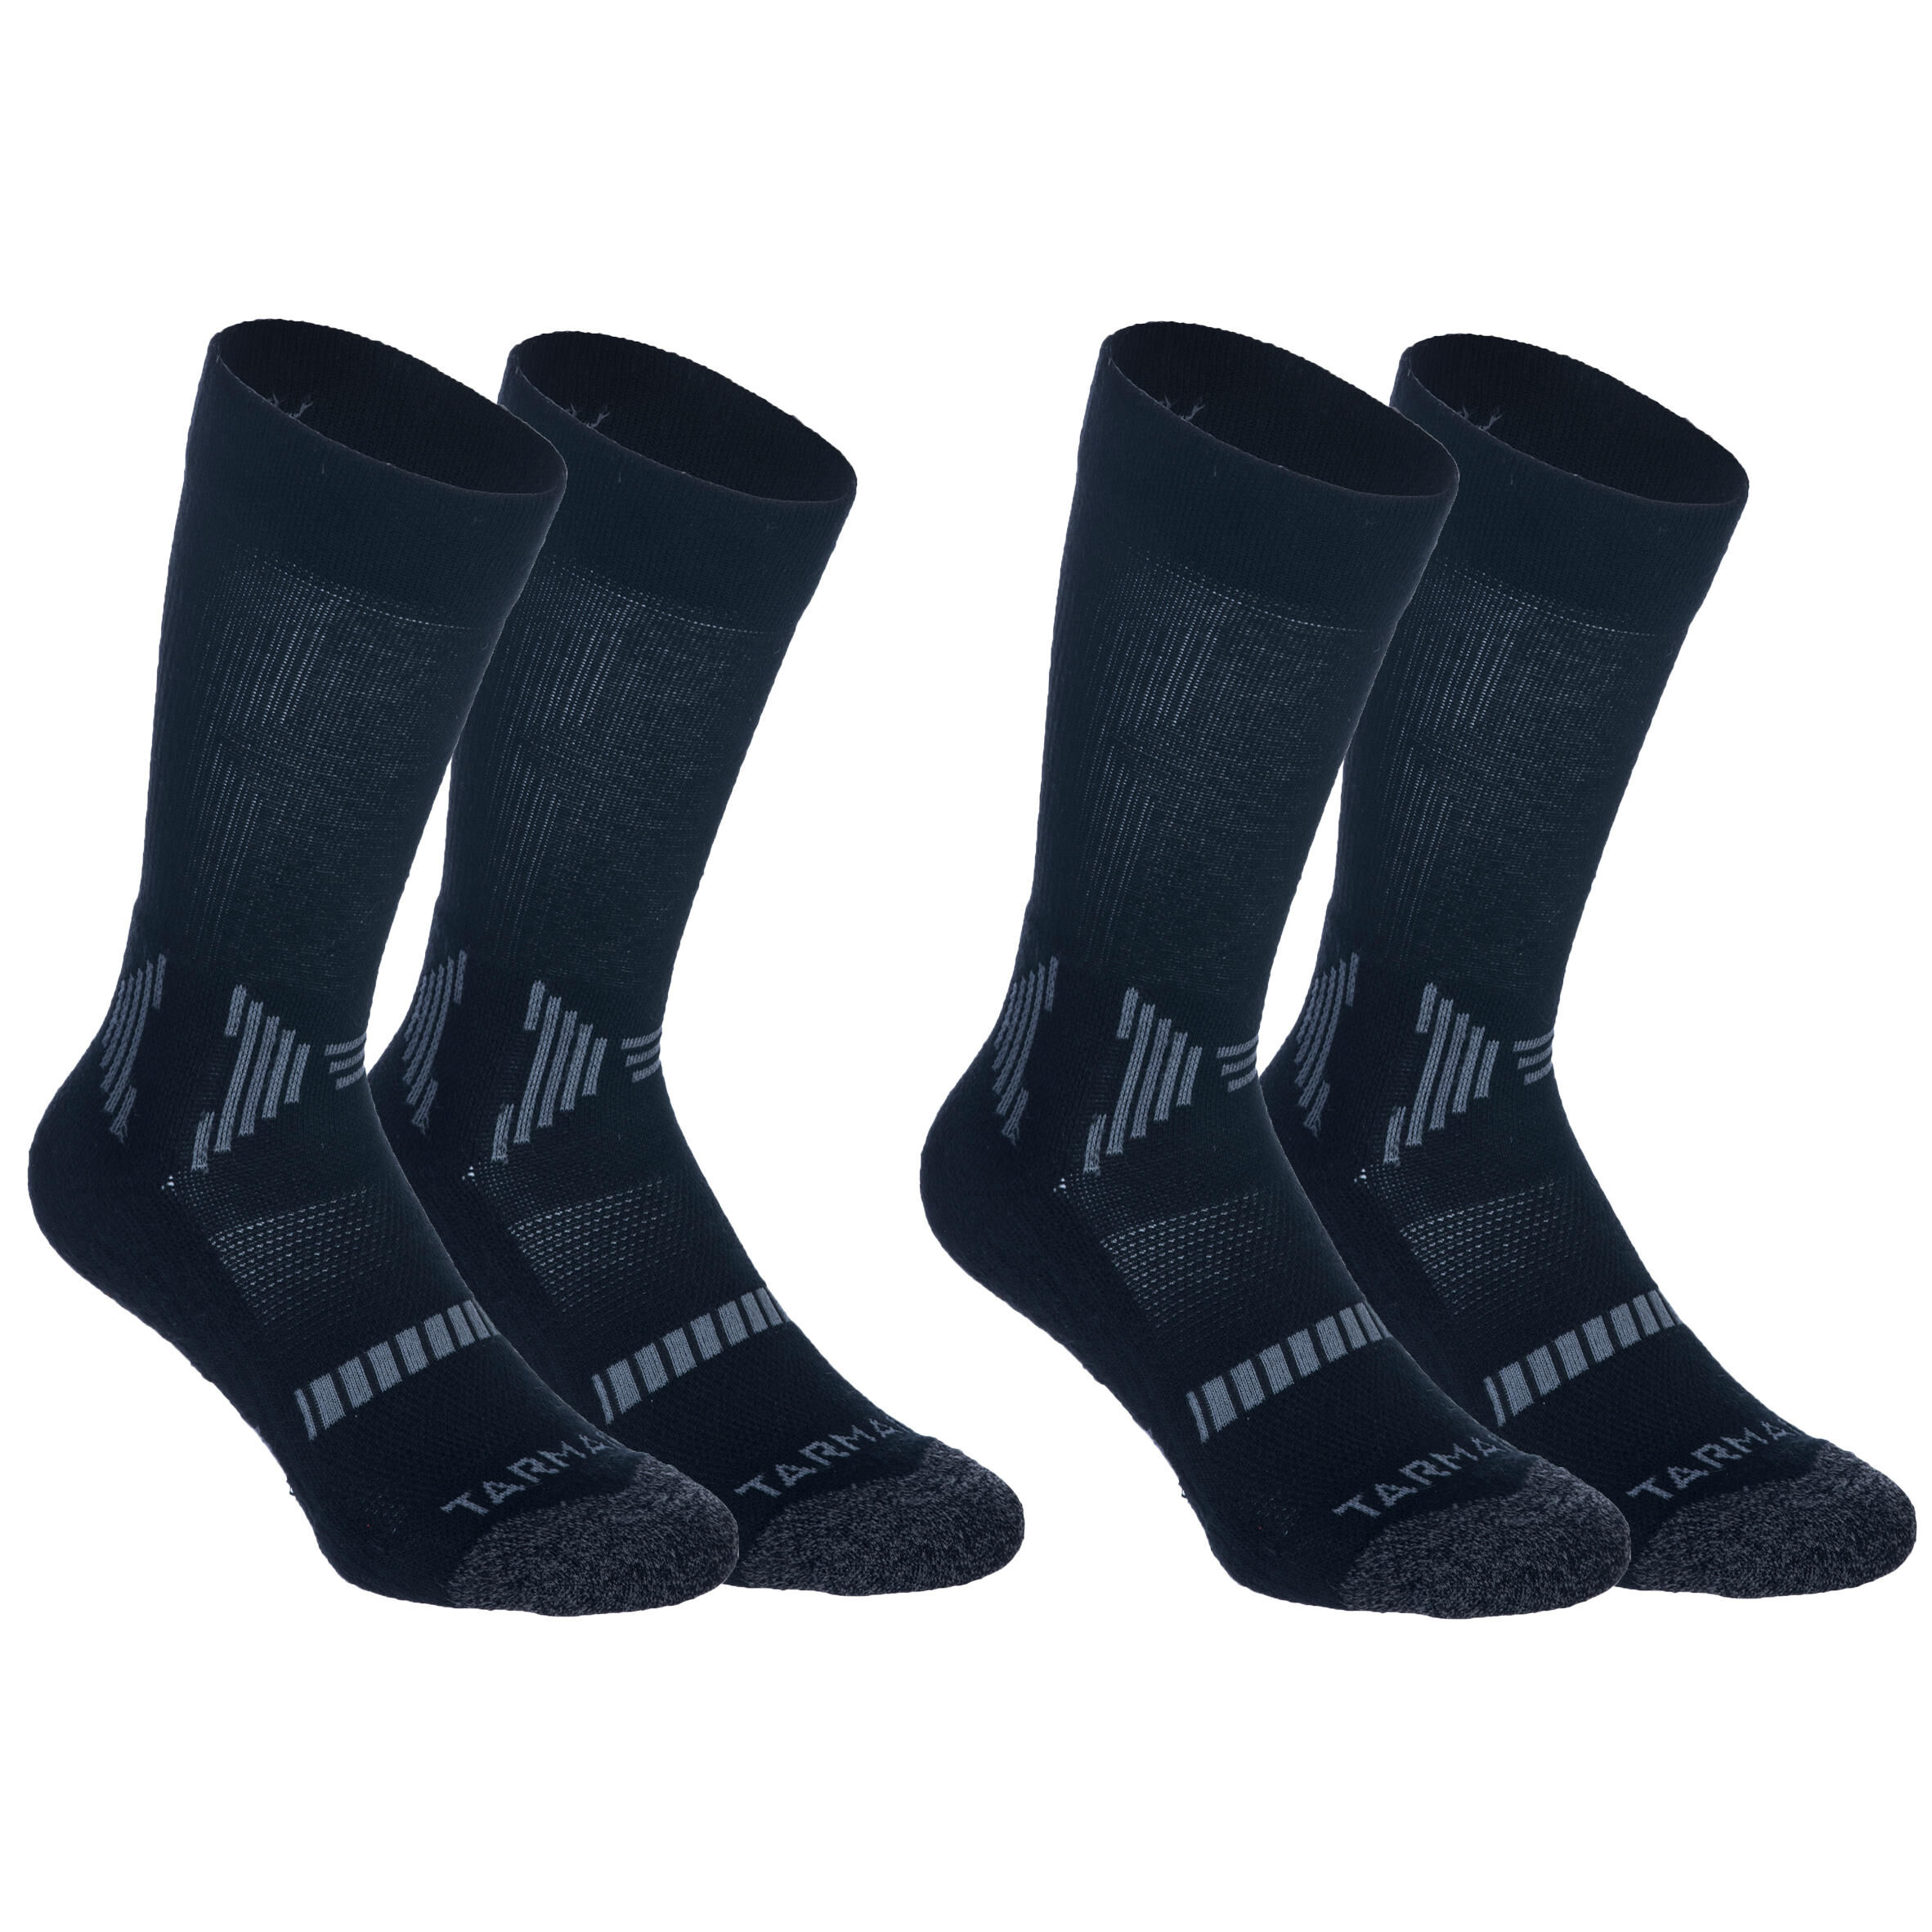 TARMAK Men's/Women's Mid-Rise Basketball Socks SO500 Twin-Pack - Black